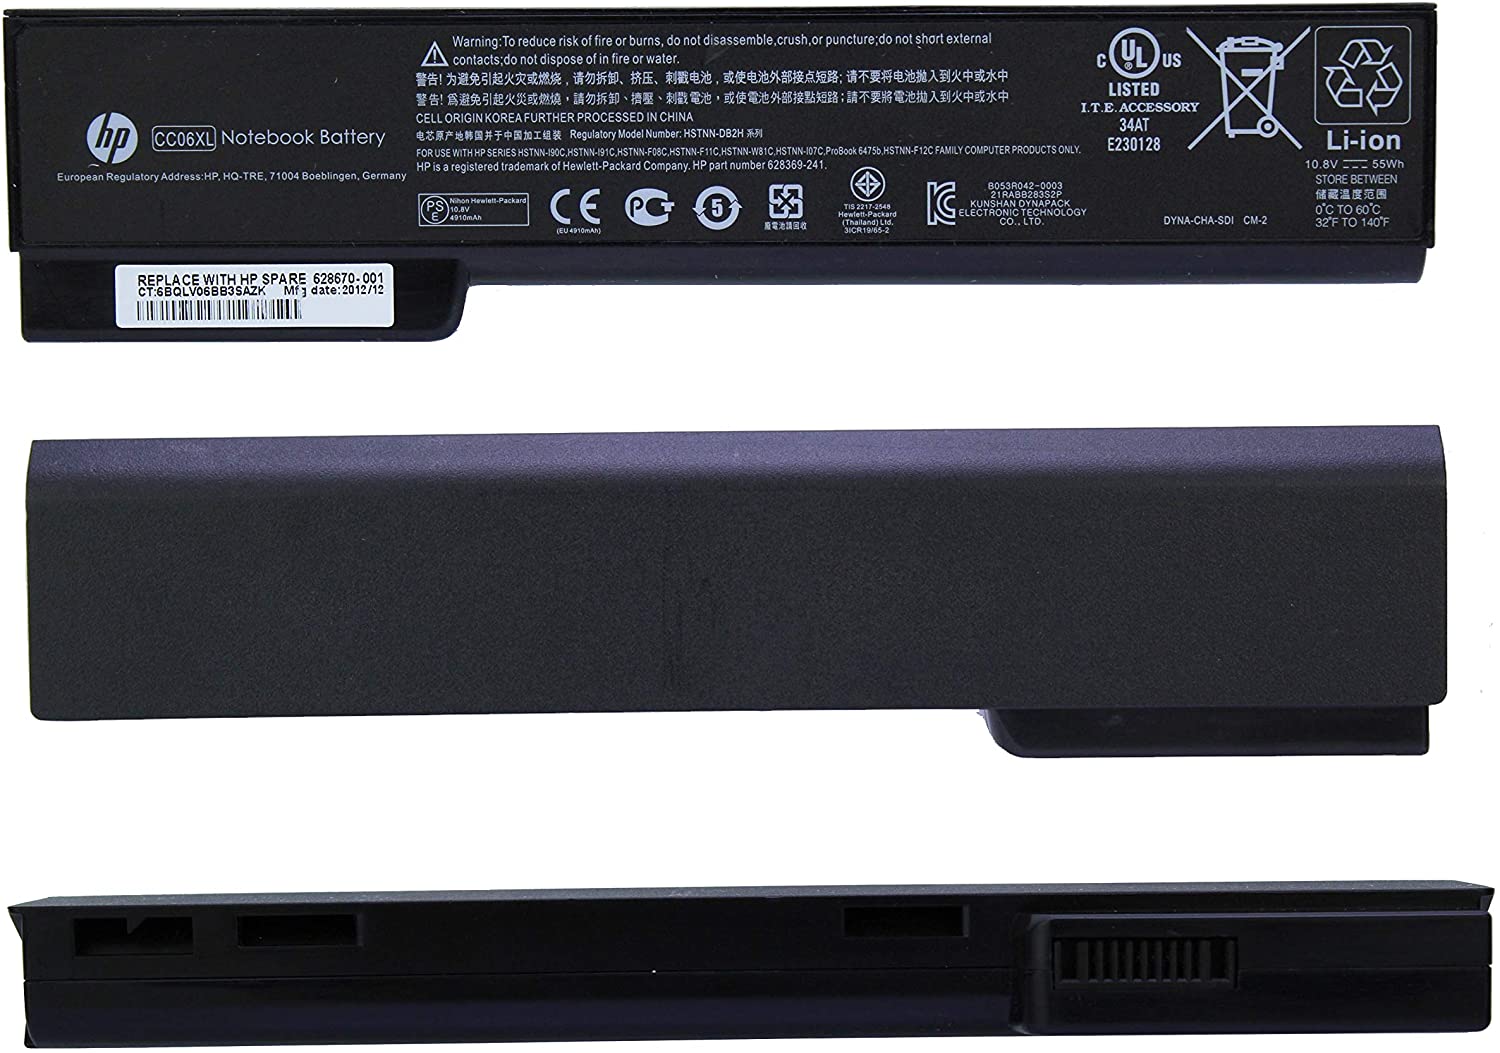 Original Laptop Battery For HP EliteBook 8460P 8470P 8560P, 628666-001 628668-001 628670-001 CC06 CC06XL